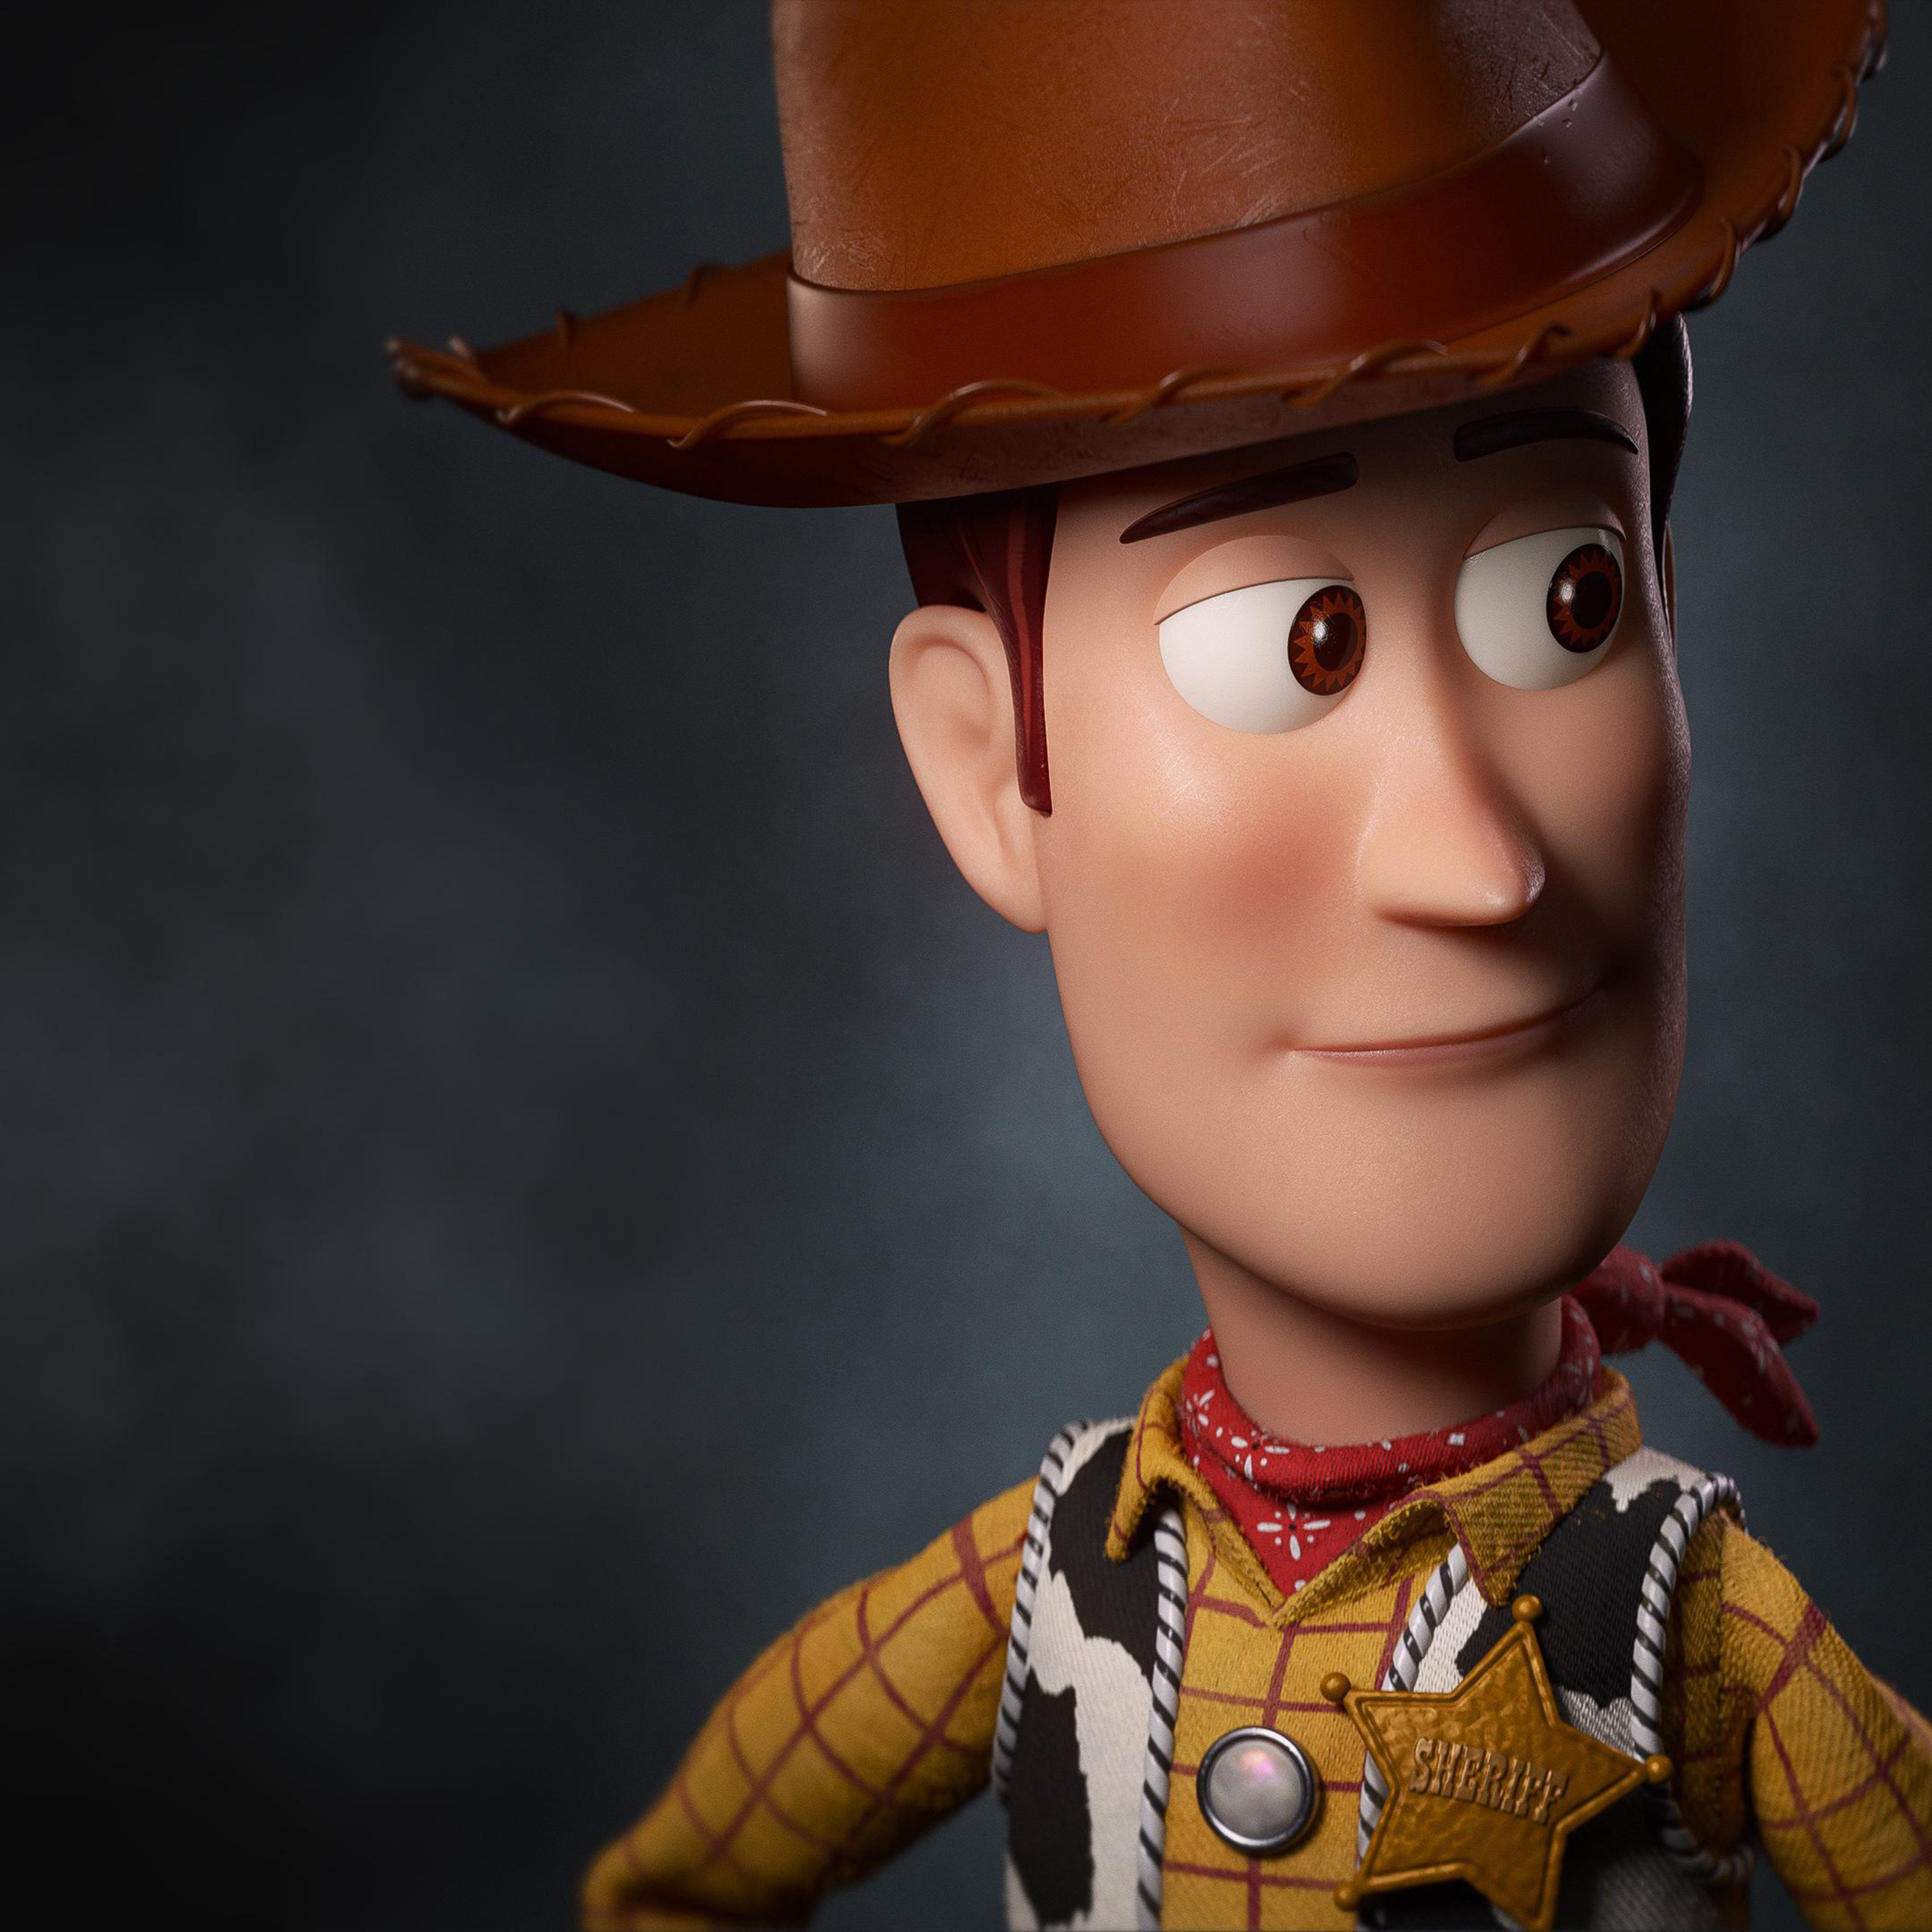 Woody toy story. Шериф Вуди. История игрушек Шериф Вуди. Ковбой Вуди. Toy story 4 Woody.